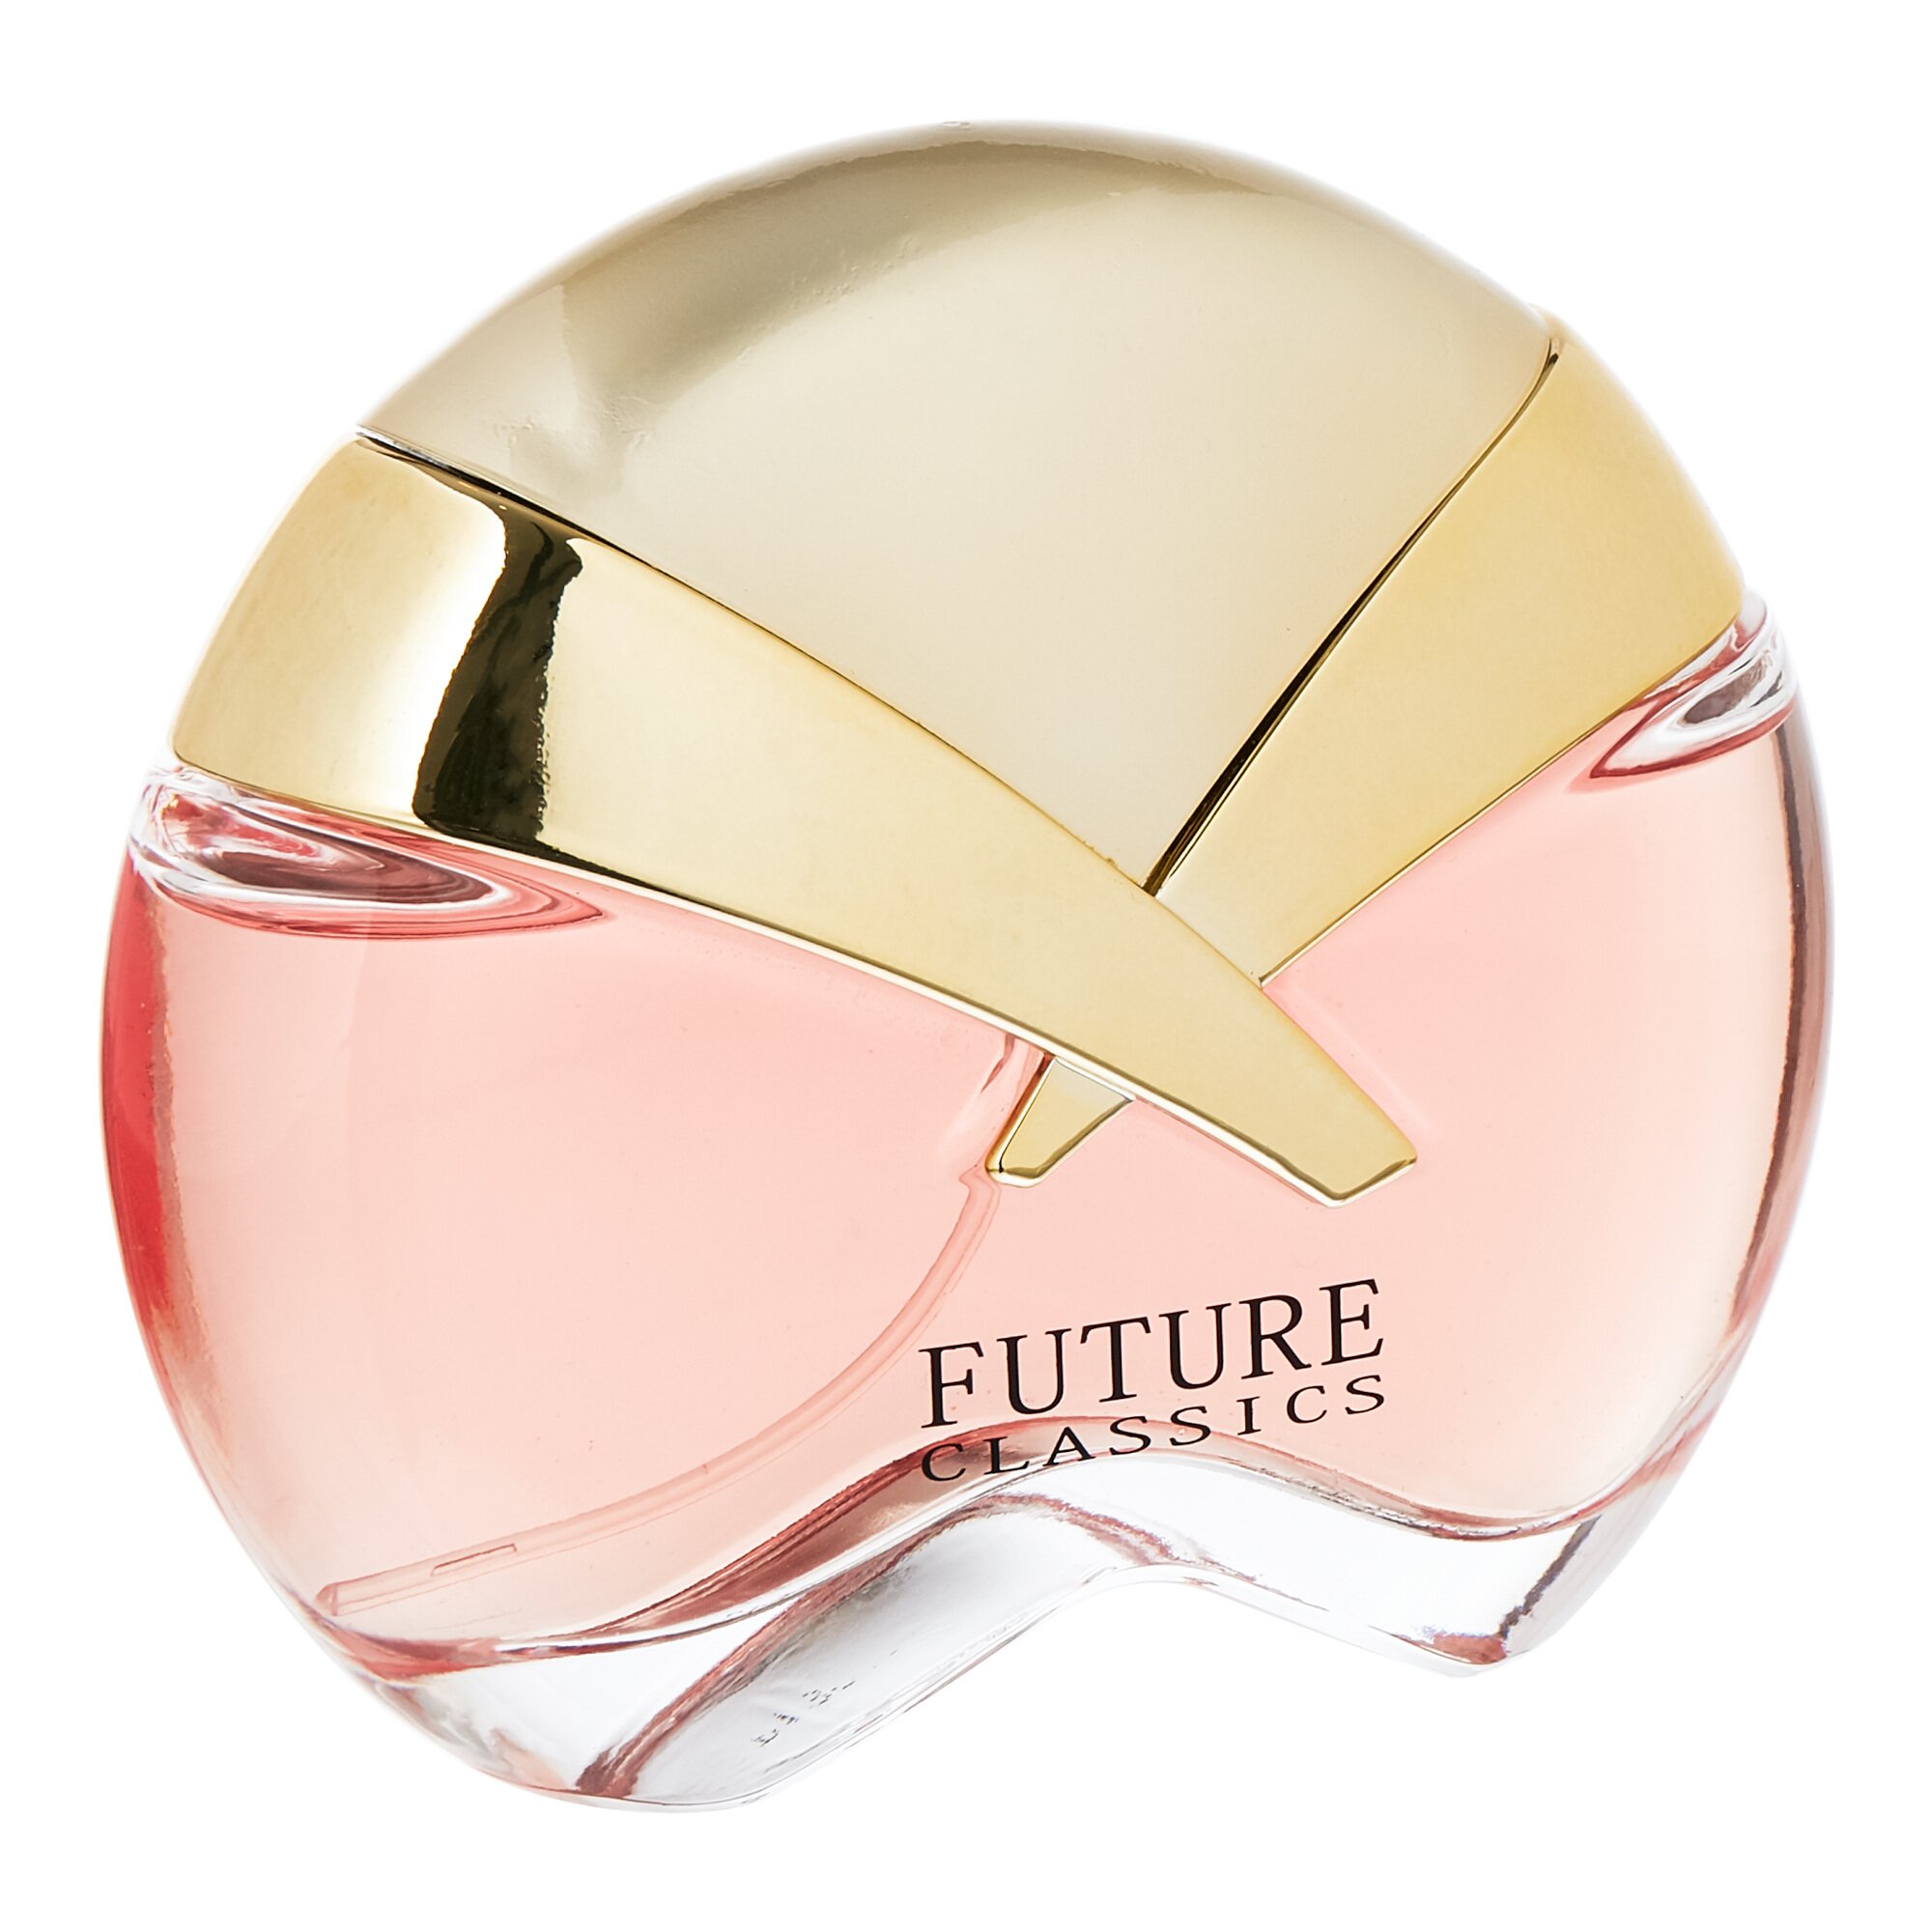 Parfum Future Classics